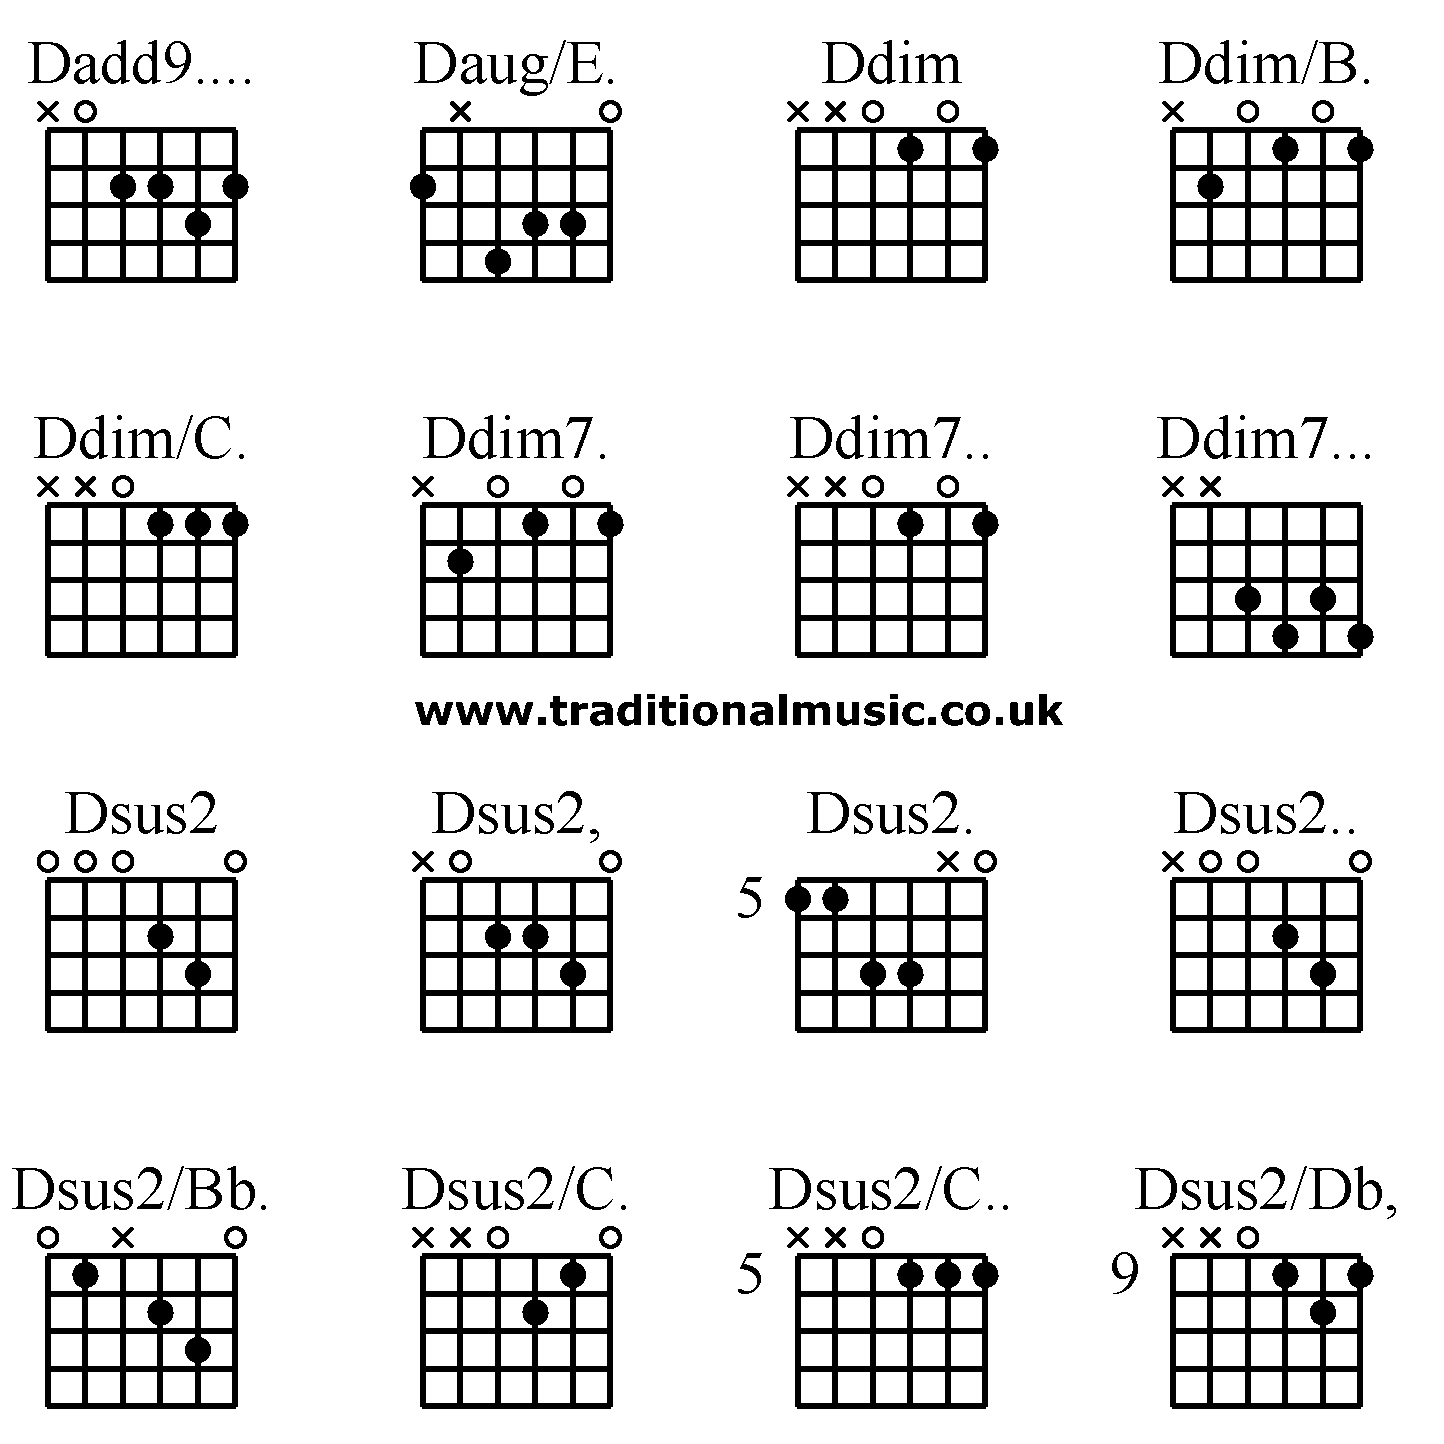 Advanced guitar chords:Dadd9.... Daug/E. Ddim Ddim/B. Ddim/C. Ddim7. Ddim7.. Ddim7... Dsus2 Dsus2, Dsus2. Dsus2.. Dsus2/Bb. Dsus2/C. Dsus2/C.. Dsus2/Db,